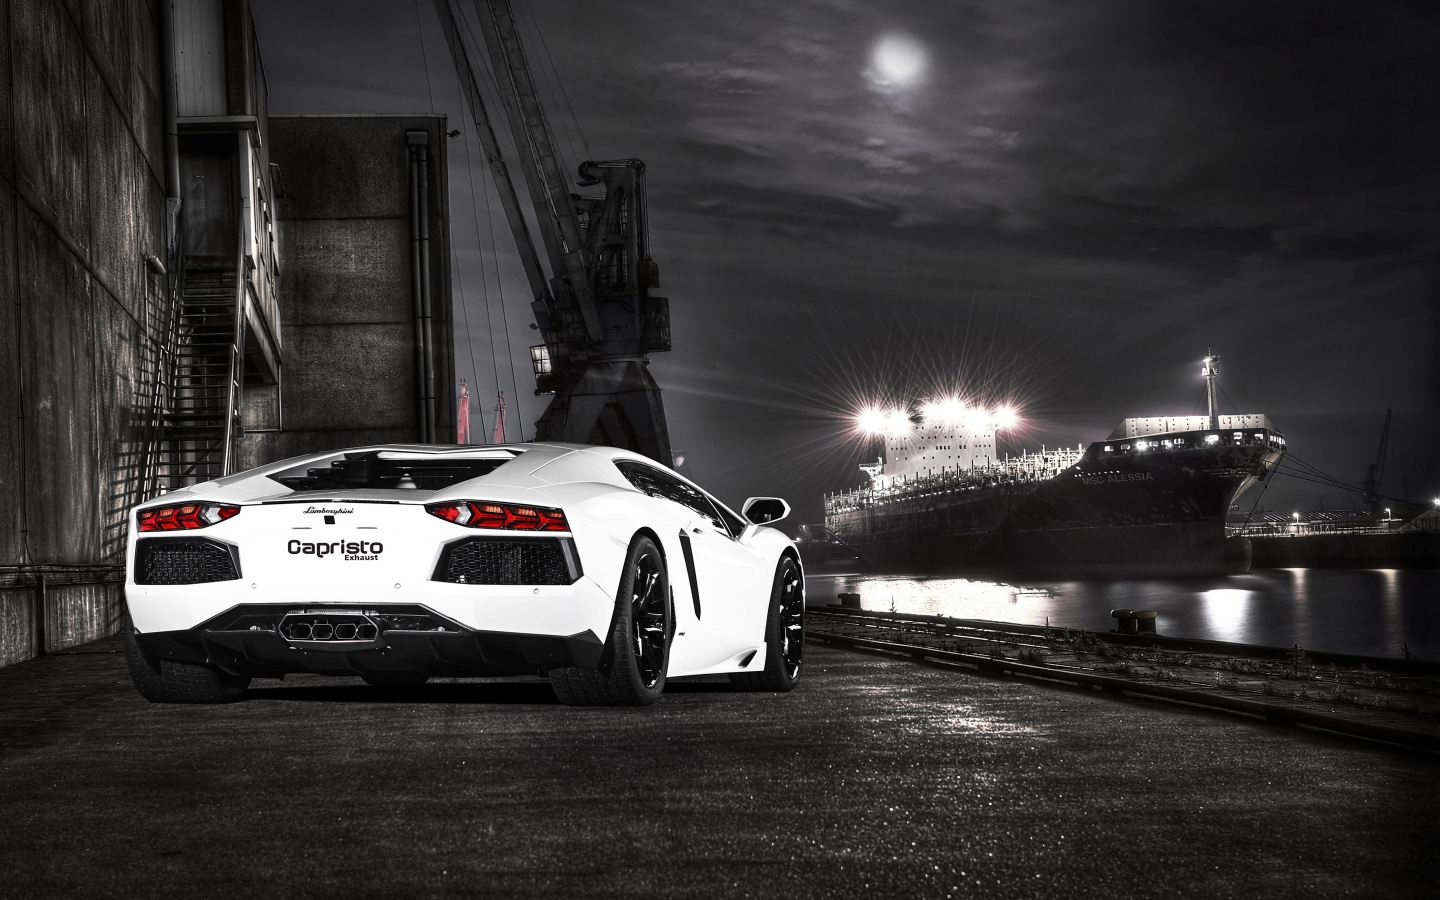 Lamborghini Capristo Aventador for 1440 x 900 widescreen resolution